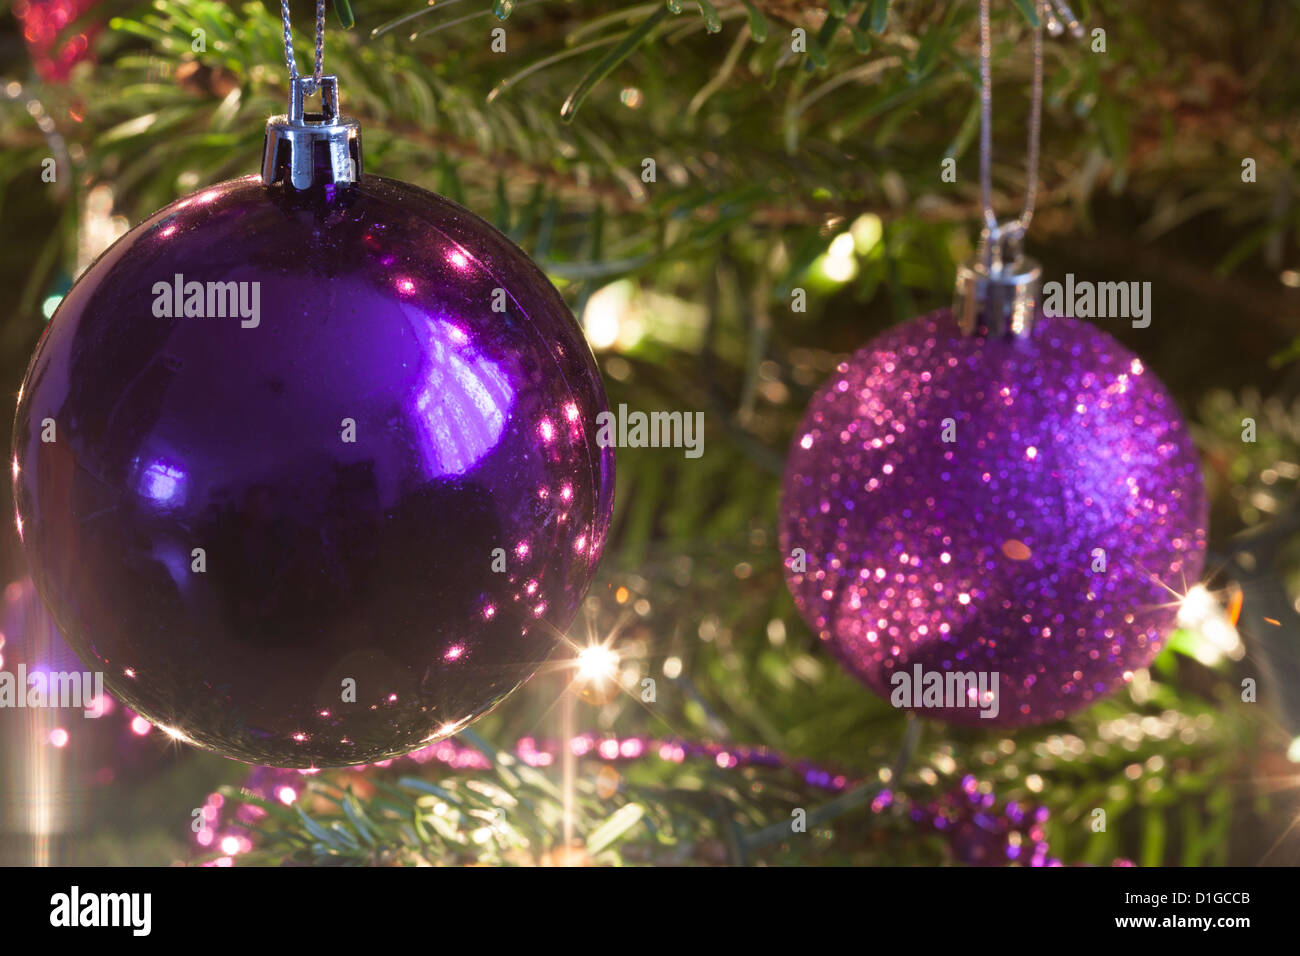 Weihnachtsbaum Hordman Kiefer Tanne geschmückt mit funkelnden Lichtern und Kugeln in grün lila und rosa, einige unscharf verschwommen Stockfoto